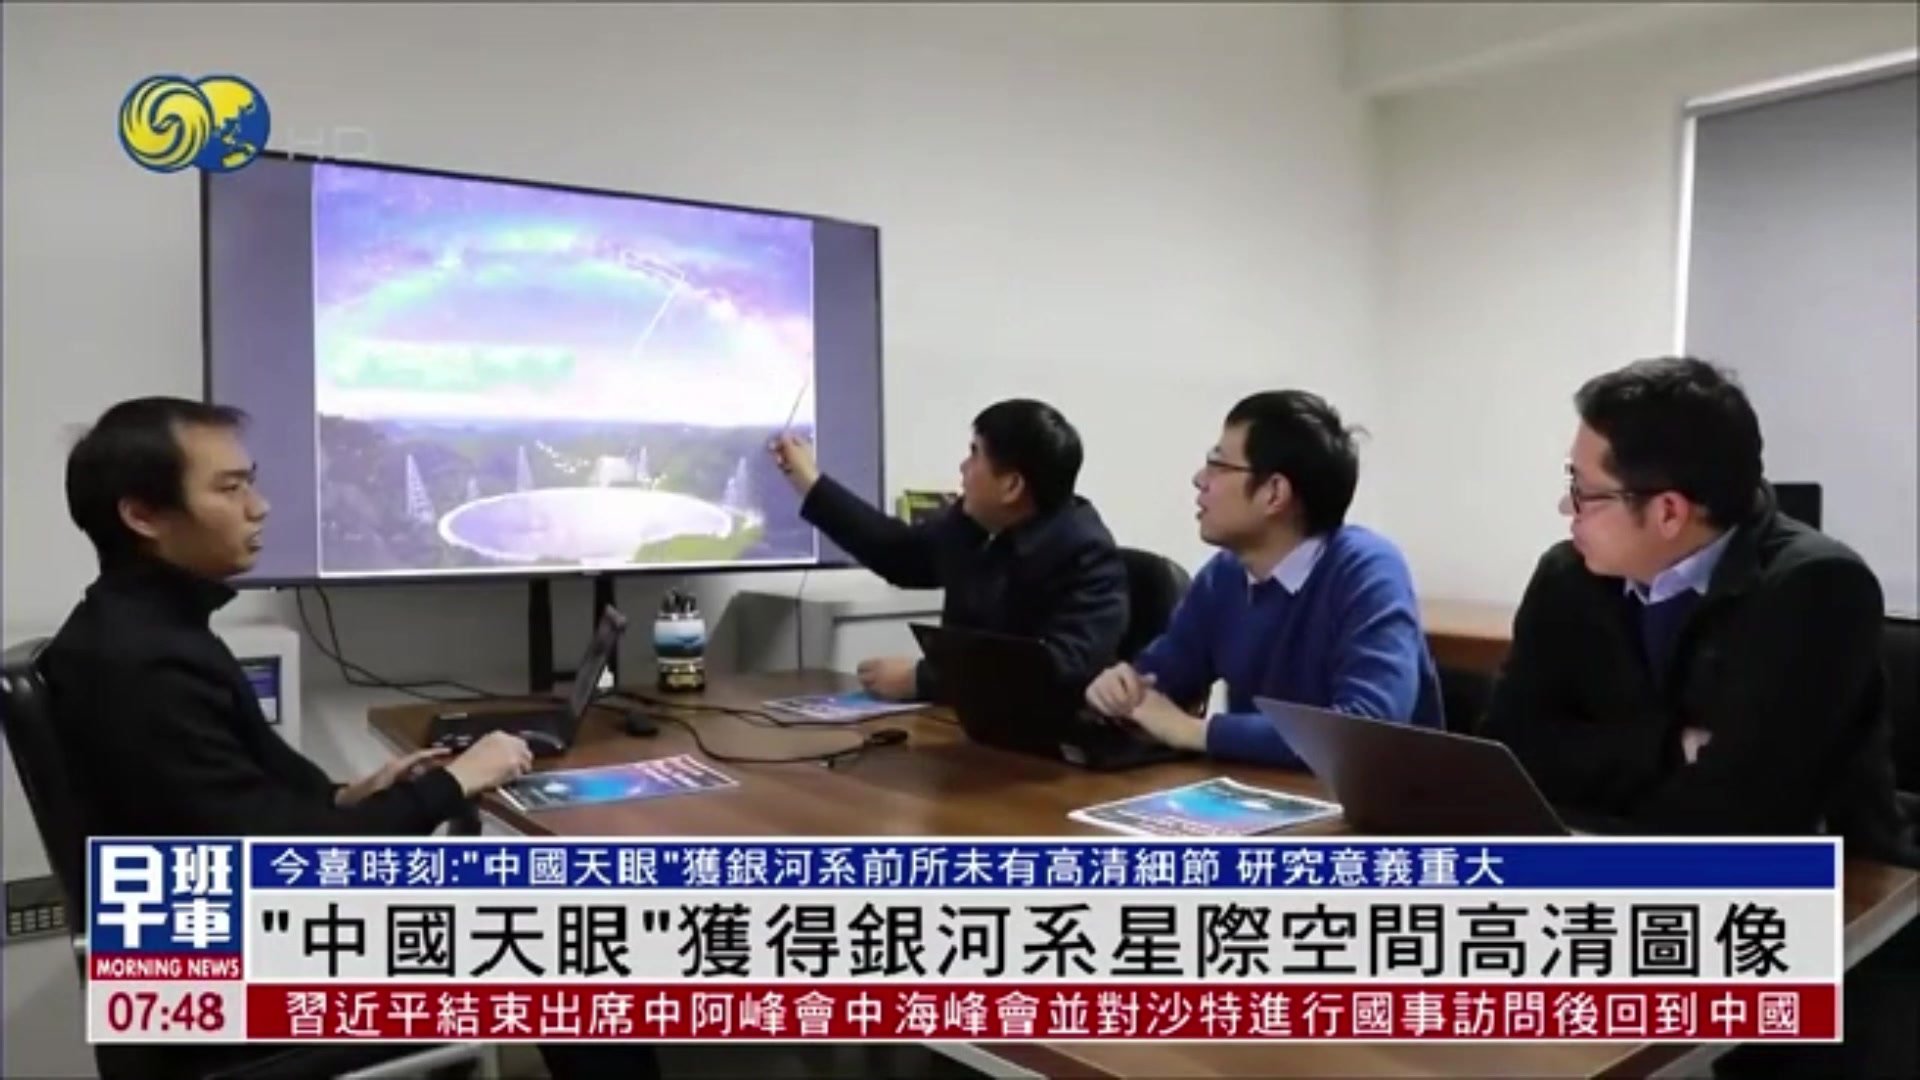 12.11今喜时刻|中国天眼获得银河系气体高清图像